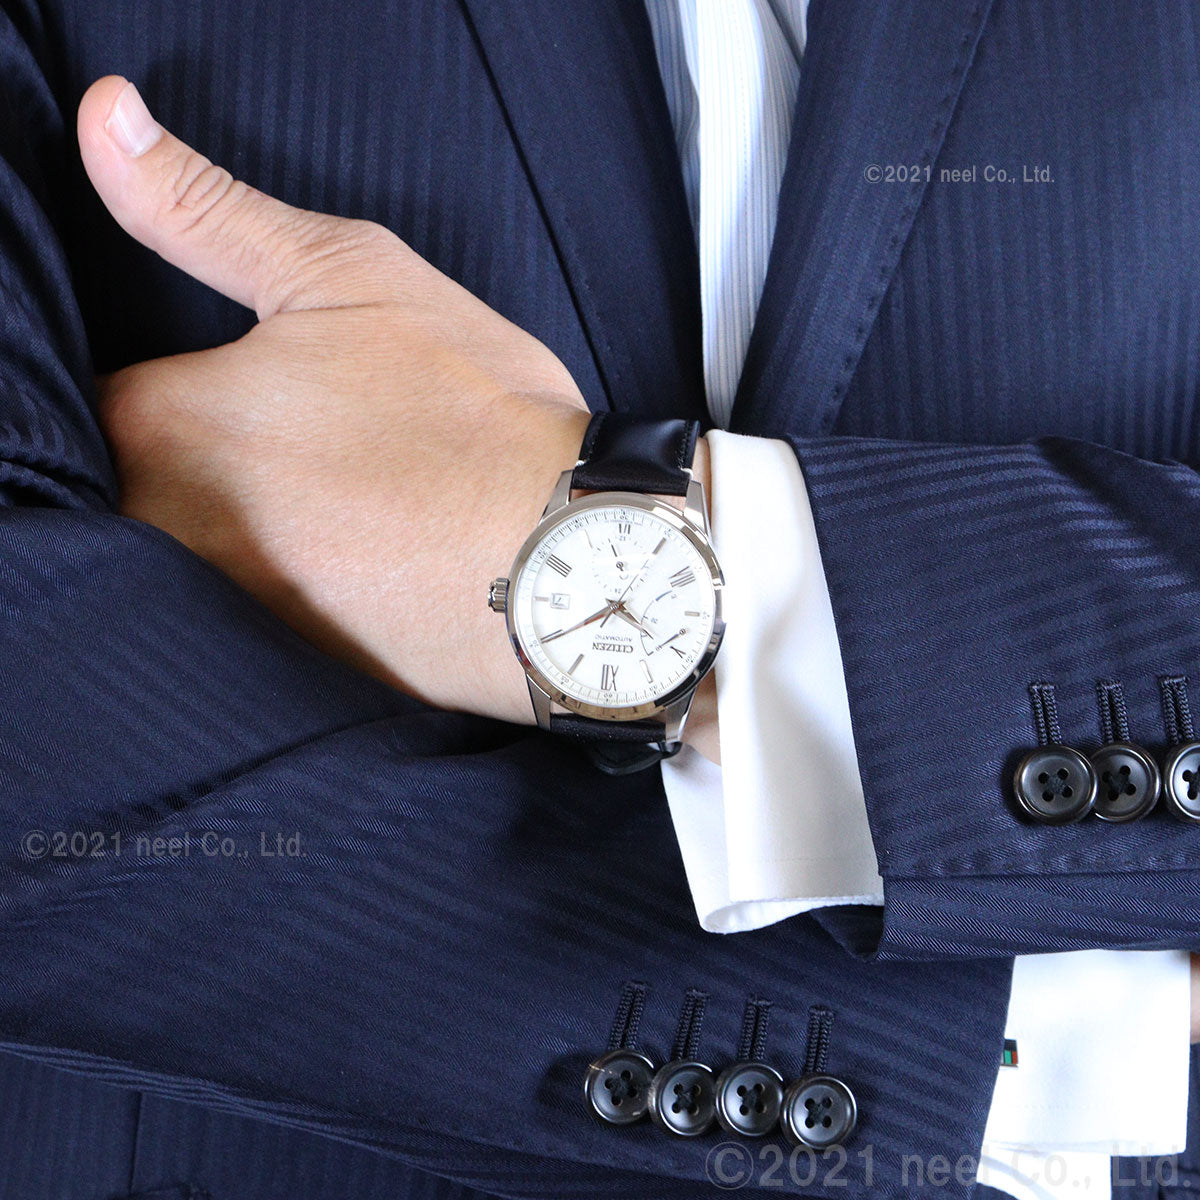 シチズン CITIZEN 腕時計 メンズ NB3020-08A コレクション メカニカル 銀箔漆文字板 CITIZEN COLLECTION 自動巻き（9184/手巻き付） ホワイトxブラック アナログ表示